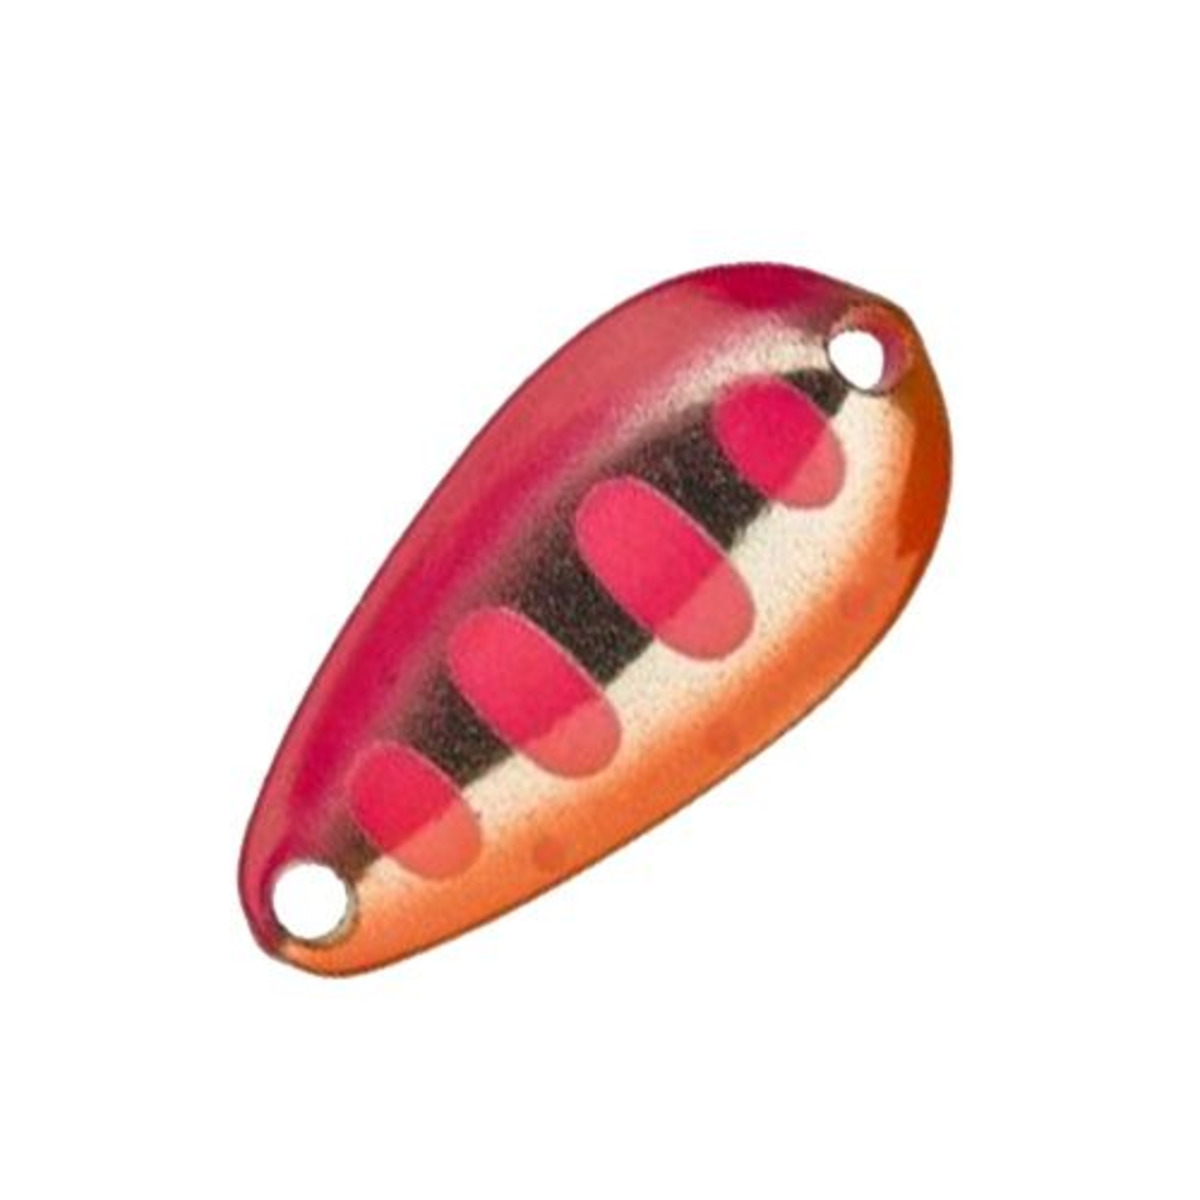 Illex Tearo 1.3 G - 1.3 g - 22 mm - Pink Yamame-Fluo Pink